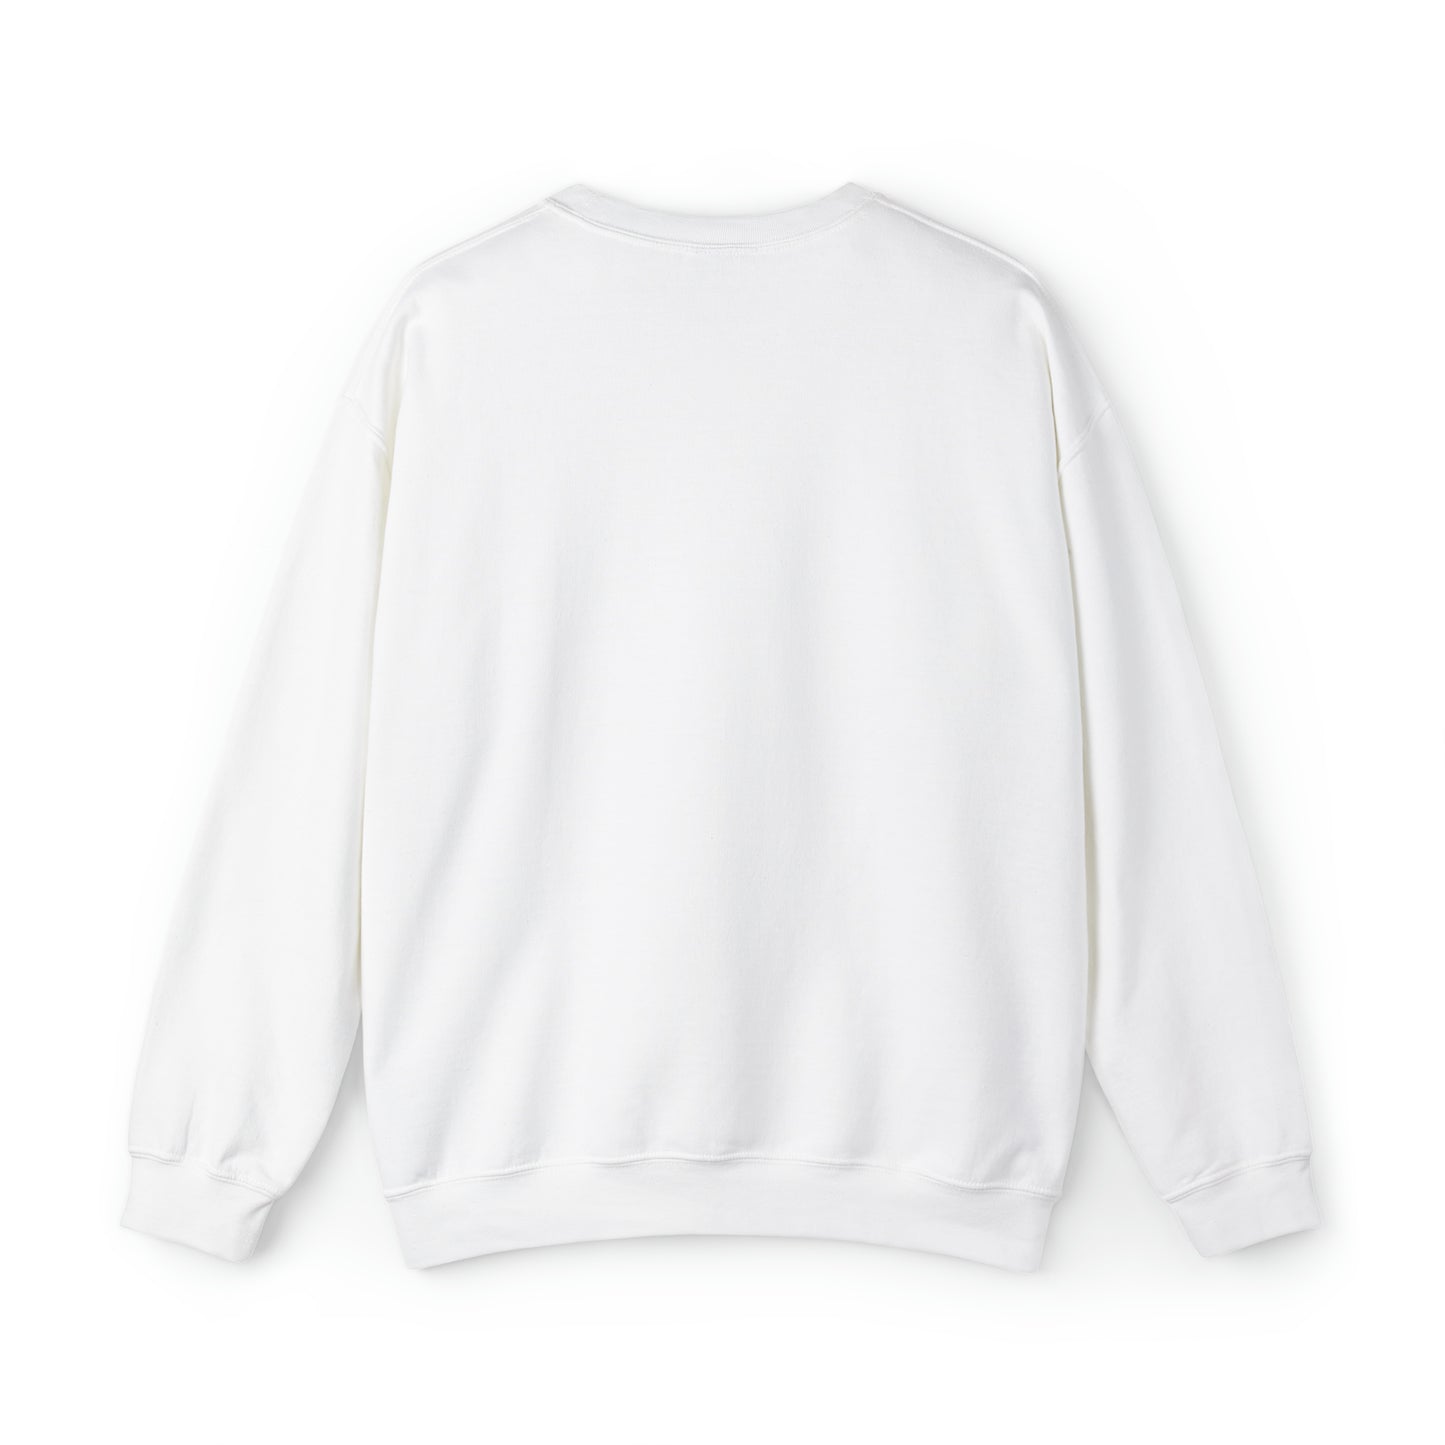 I'm Dreaming of a Keys Christmas - Sweatshirt for the Florida Keys  - Florida sweatshirt - beach sweatshirt